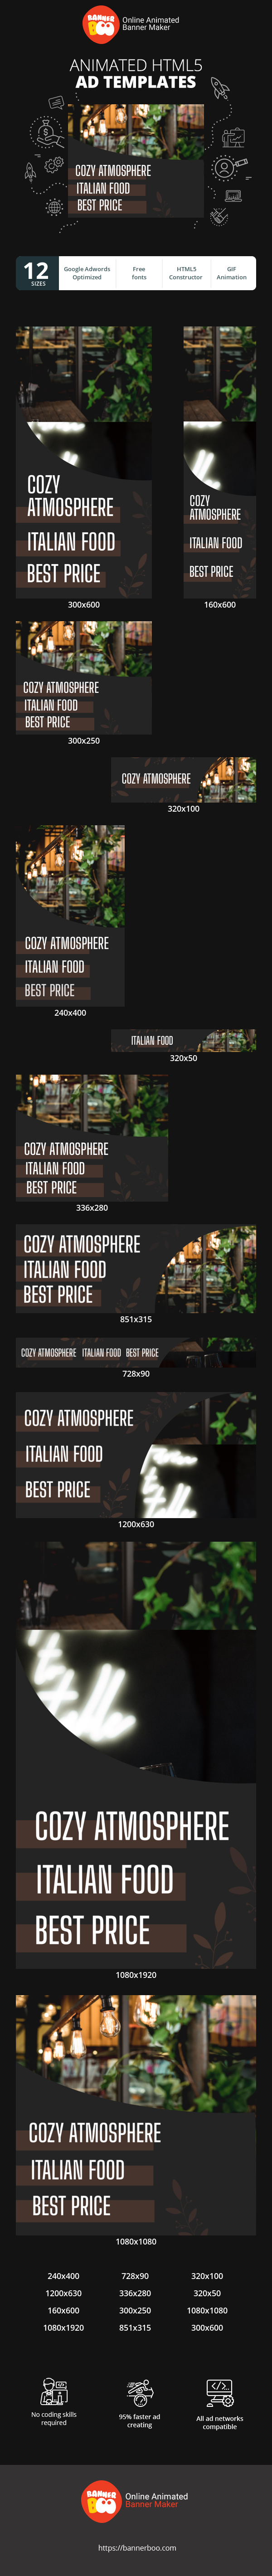 Szablon reklamy banerowej — Restaurant — Cozy Atmosphere Italian Food Best Price